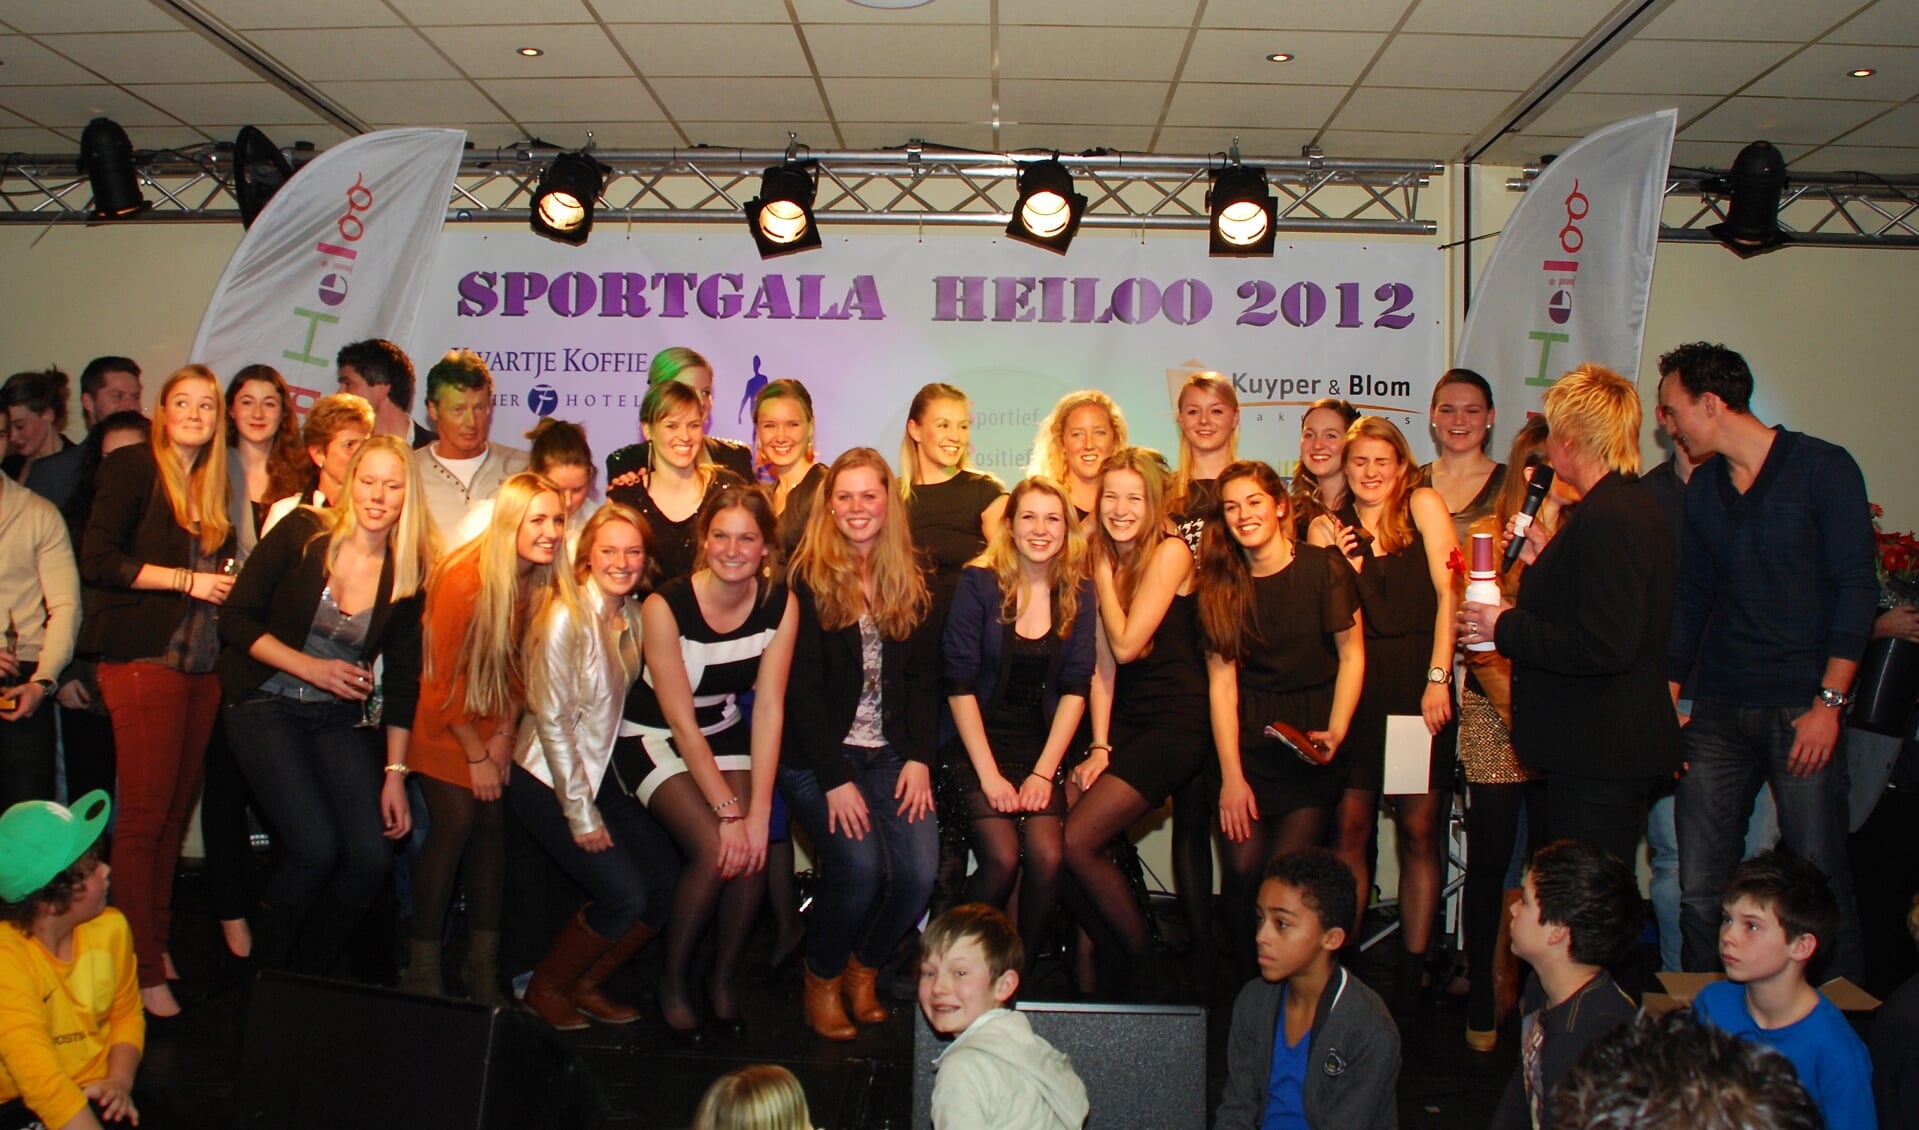 De winnaars van Sportgala 2012.